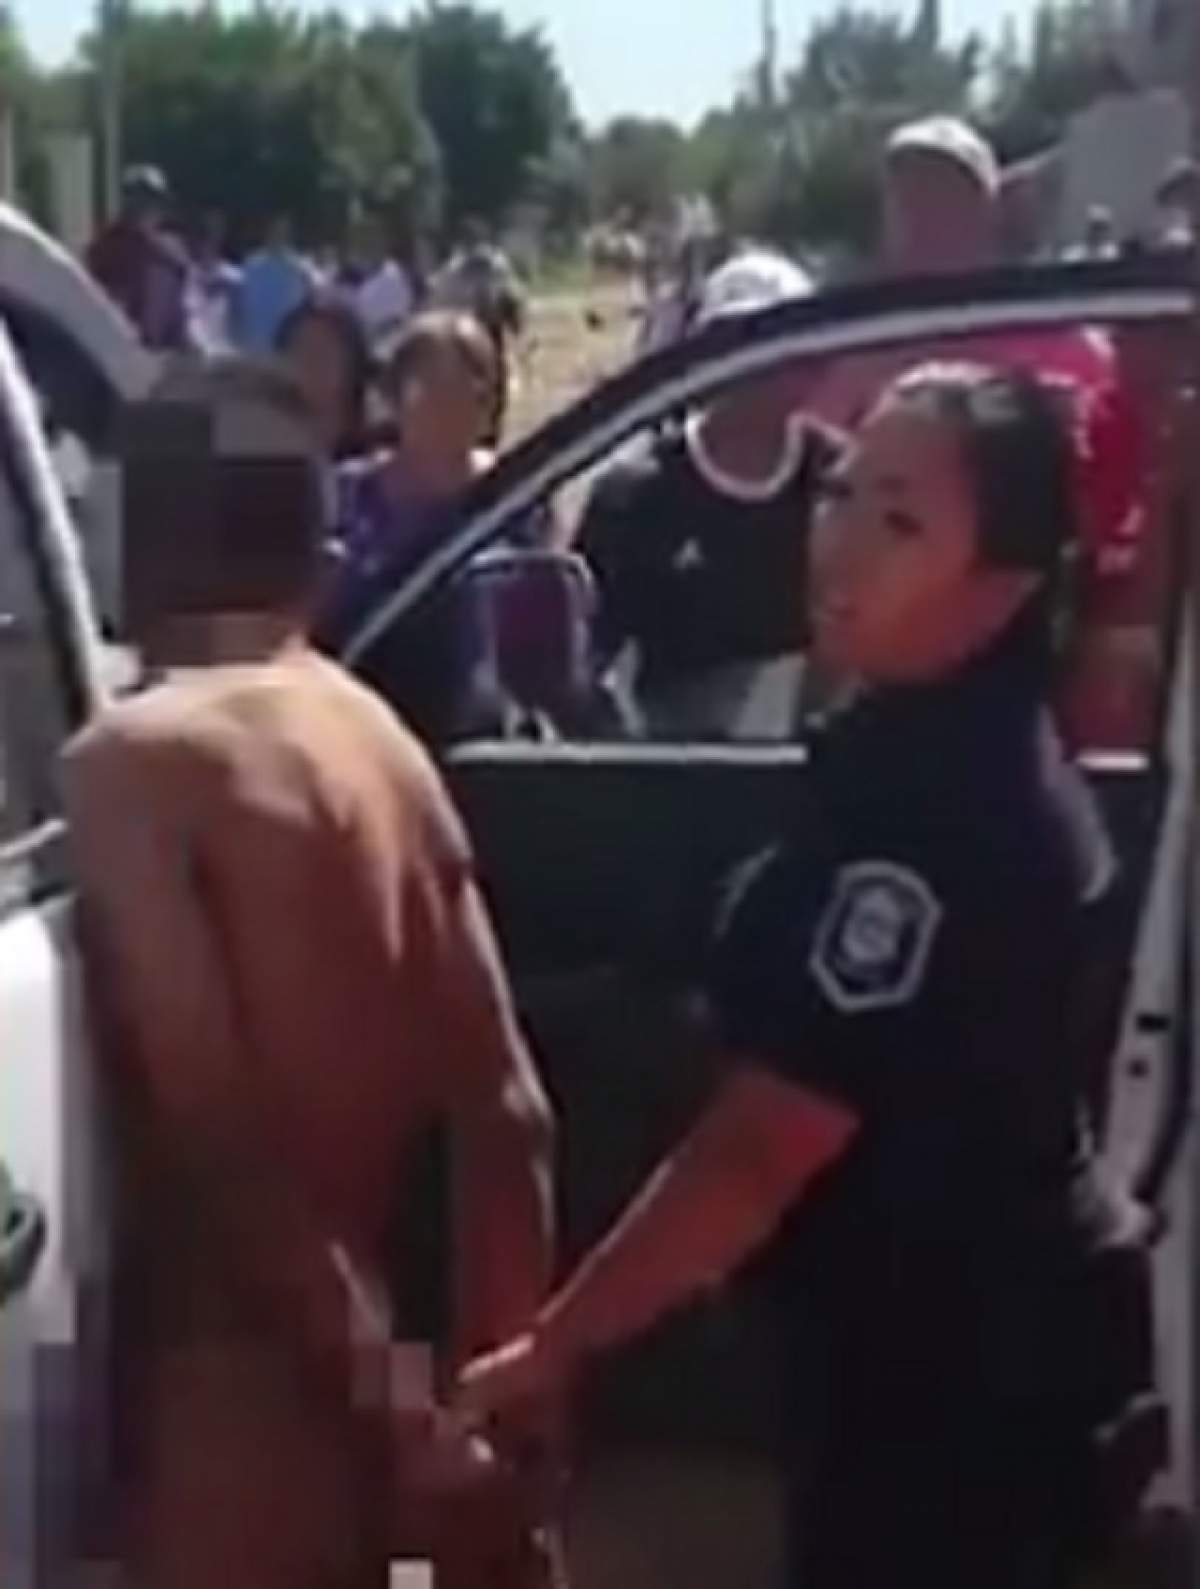 VIDEO / Imagini şocante! A fost prins în timp ce încerca să violeze o fetiţă de 8 ani şi a fost obligat să meargă gol pe stradă